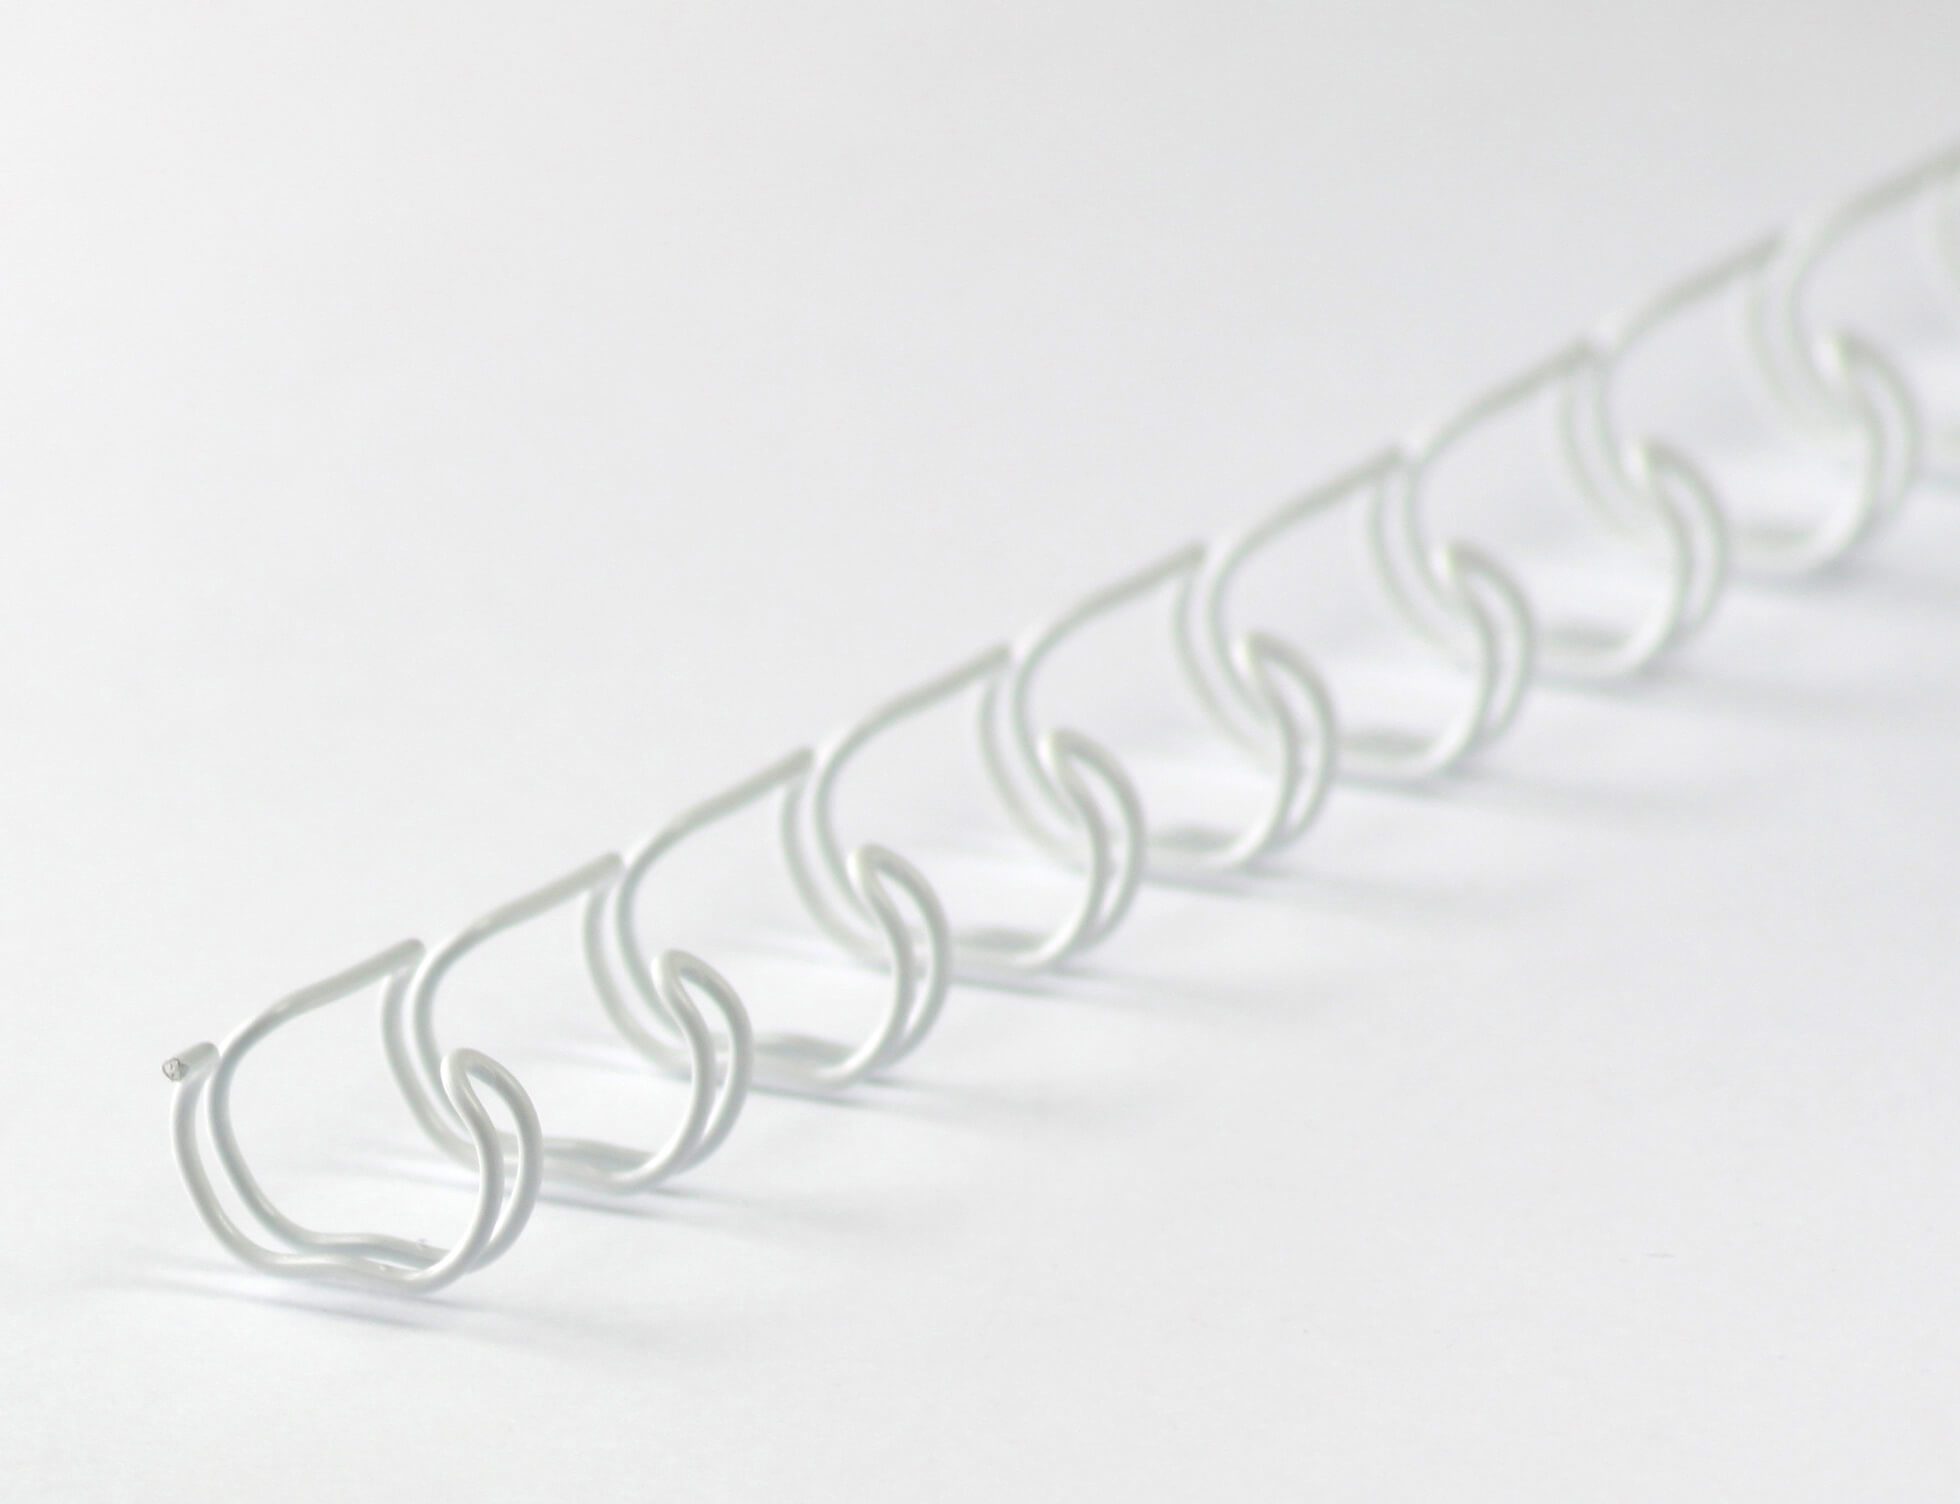 Drahtbinderücken 23 Ringe 9,5mm, 3/8 Zoll, 2:1 in weiß | Bestnr. 23RM95-WS